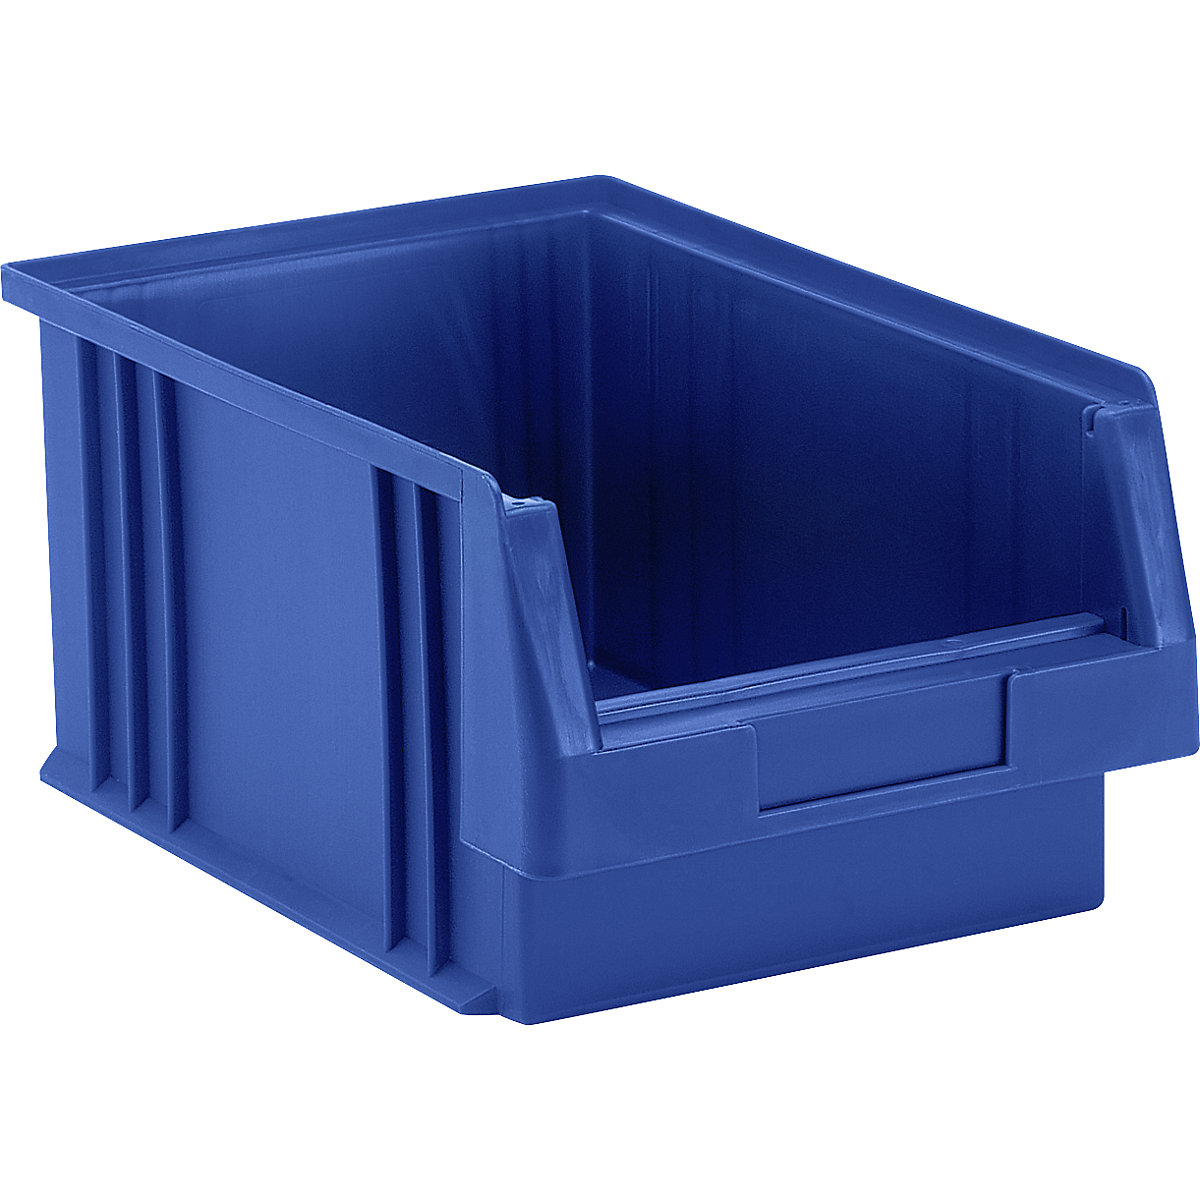 Otwarty pojemnik magazynowy z polipropylenu, poj. 7,4 l, opak. 10 szt., niebieski-6